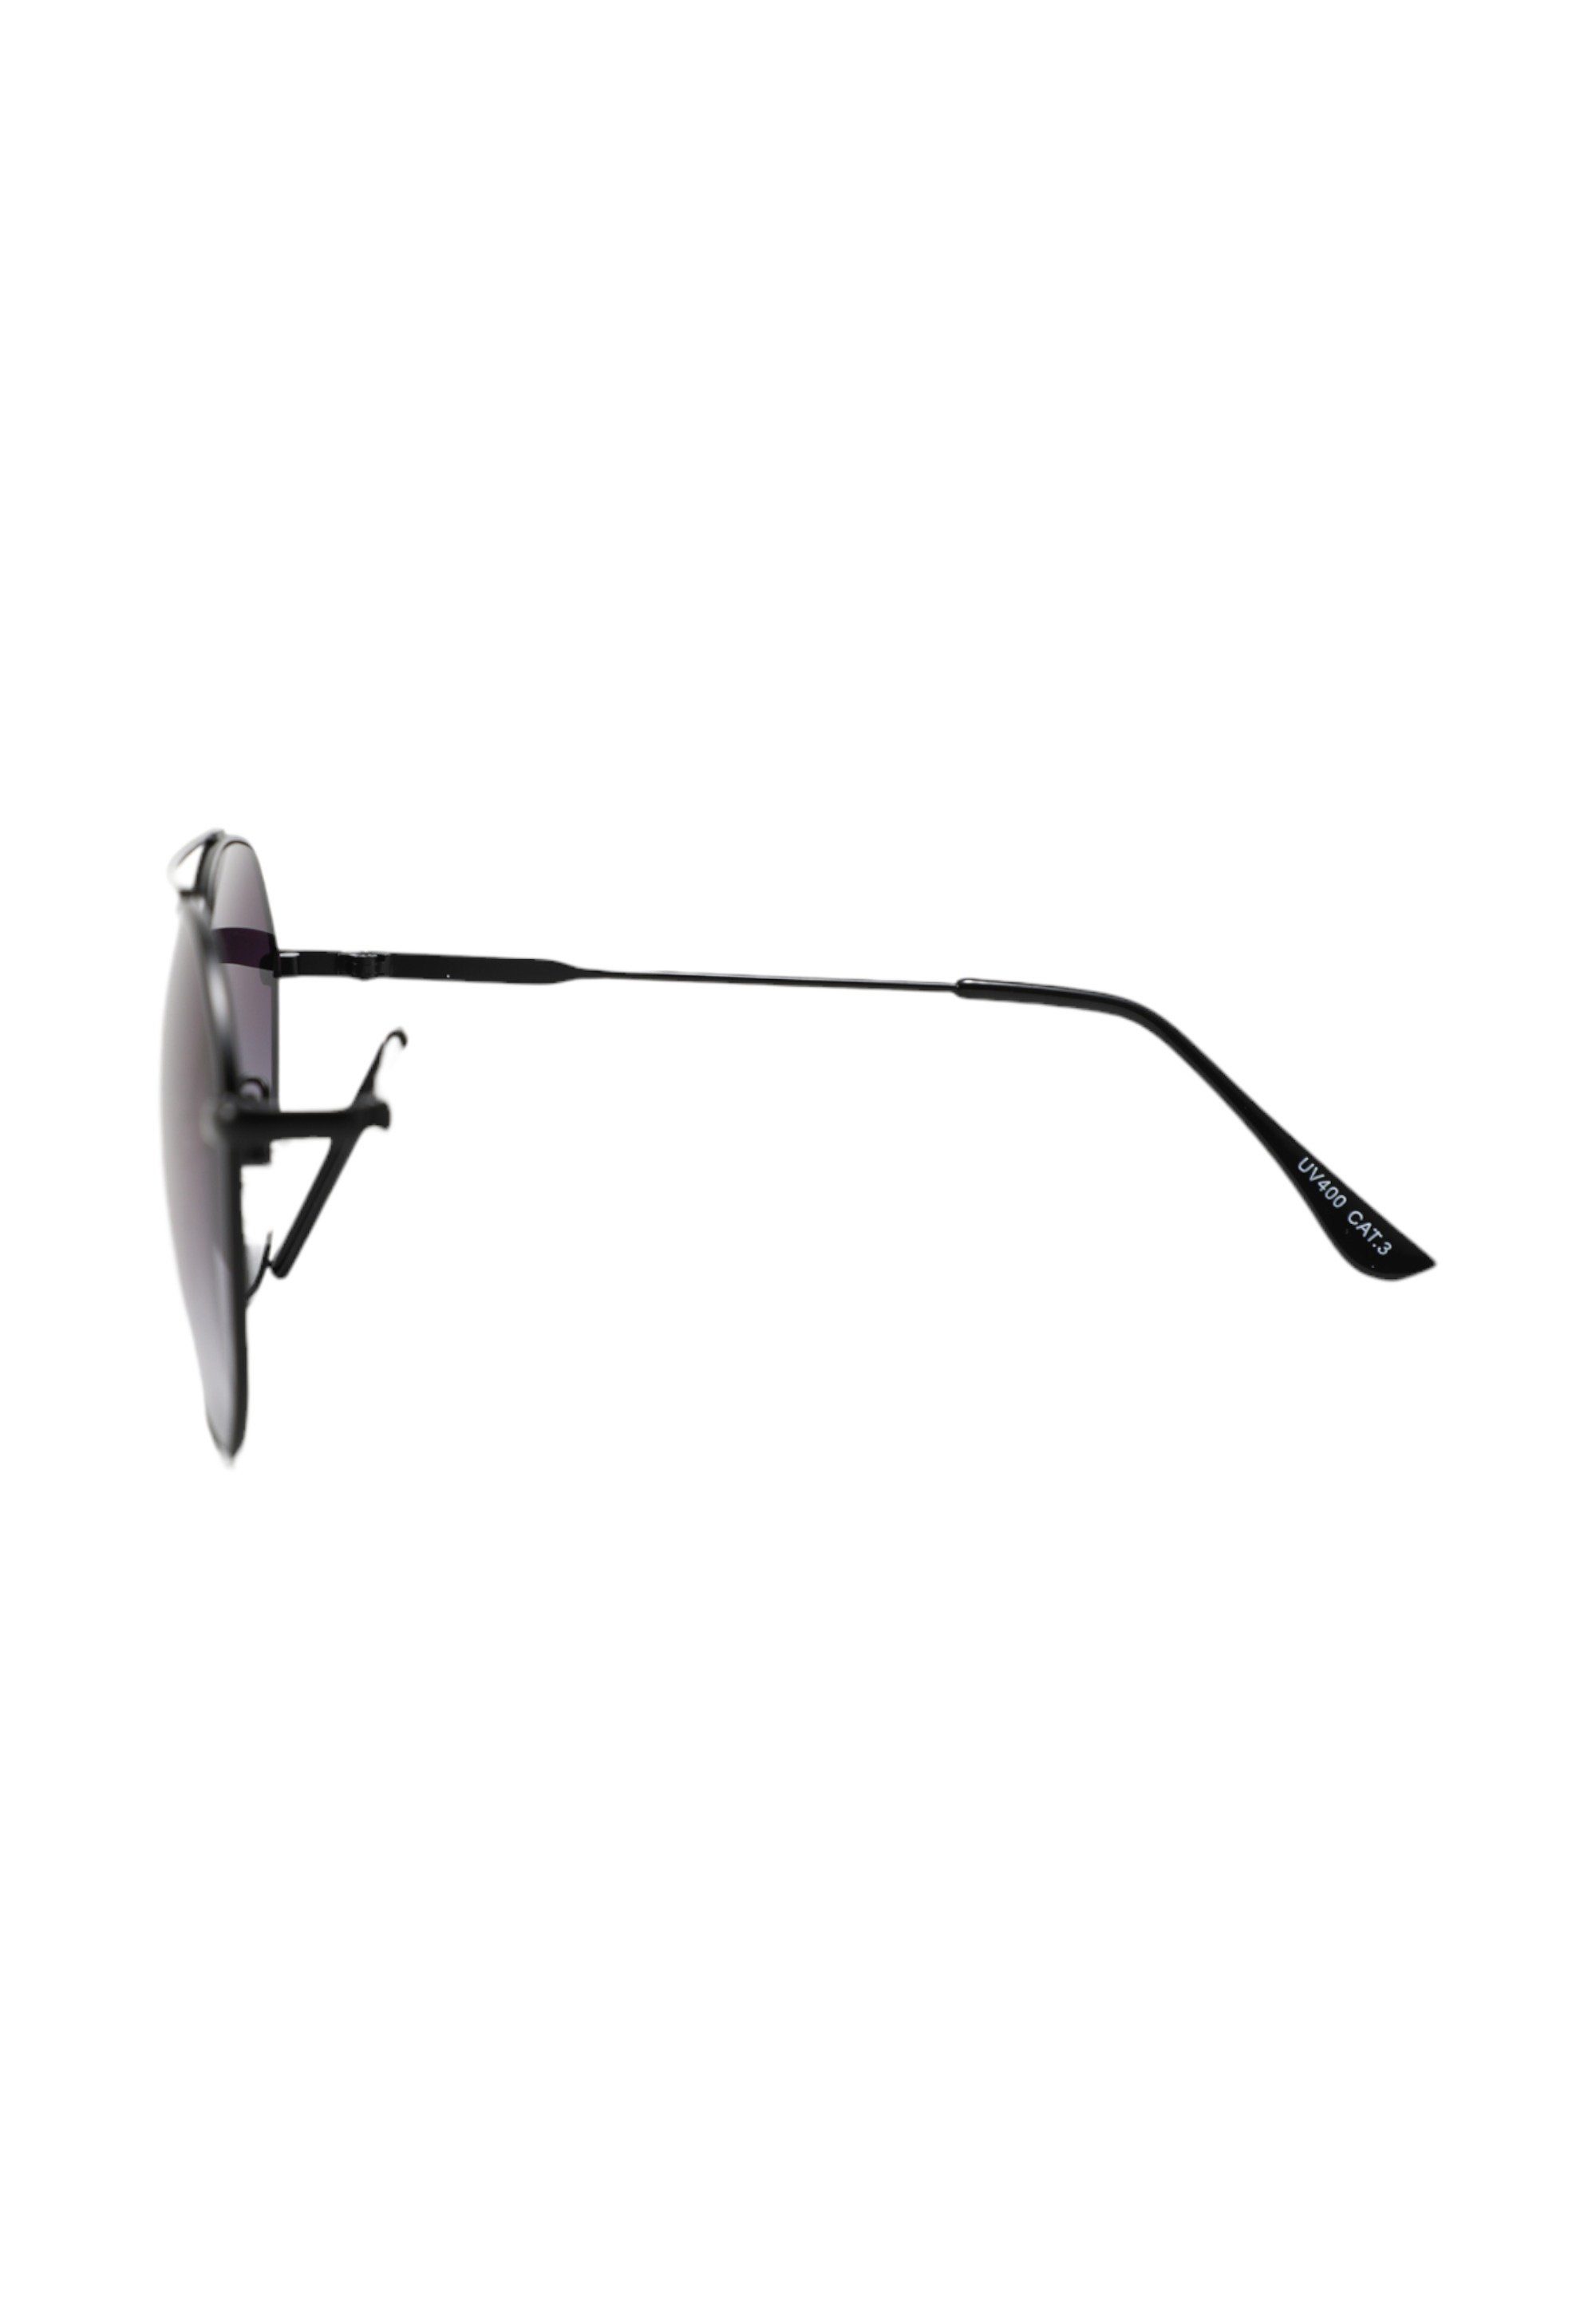 ZOVOZ Sonnenbrille Artemis | Sonnenbrillen